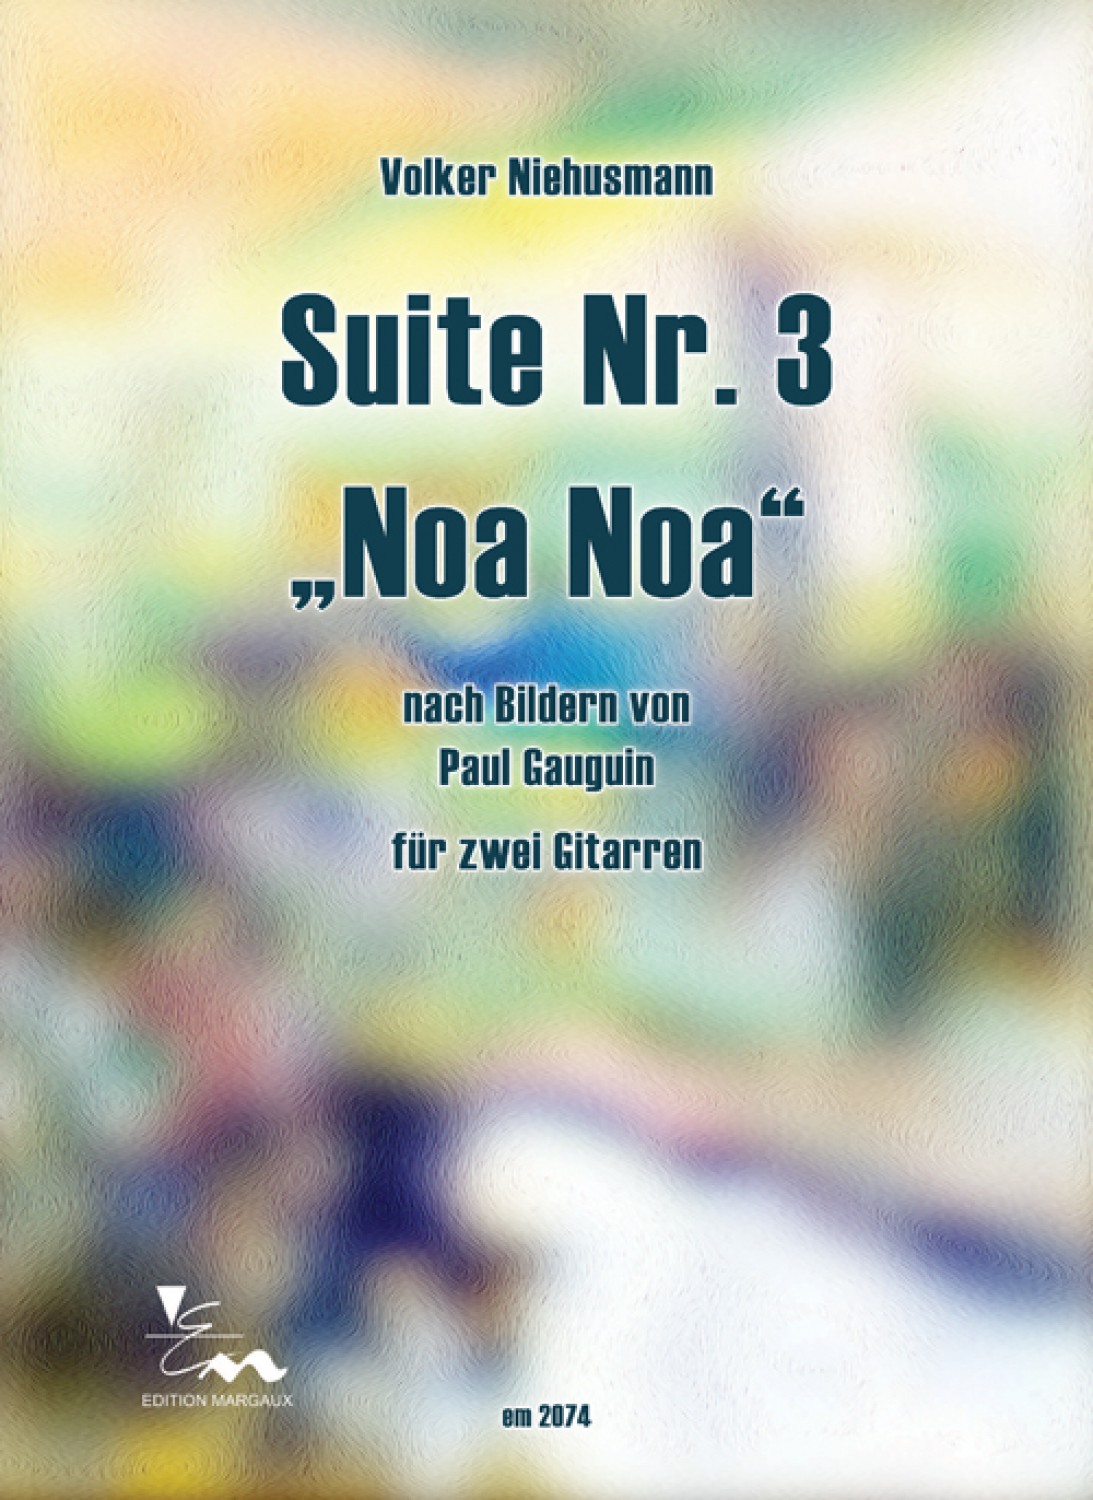 Suite Nr. 3 "Noa Noa"